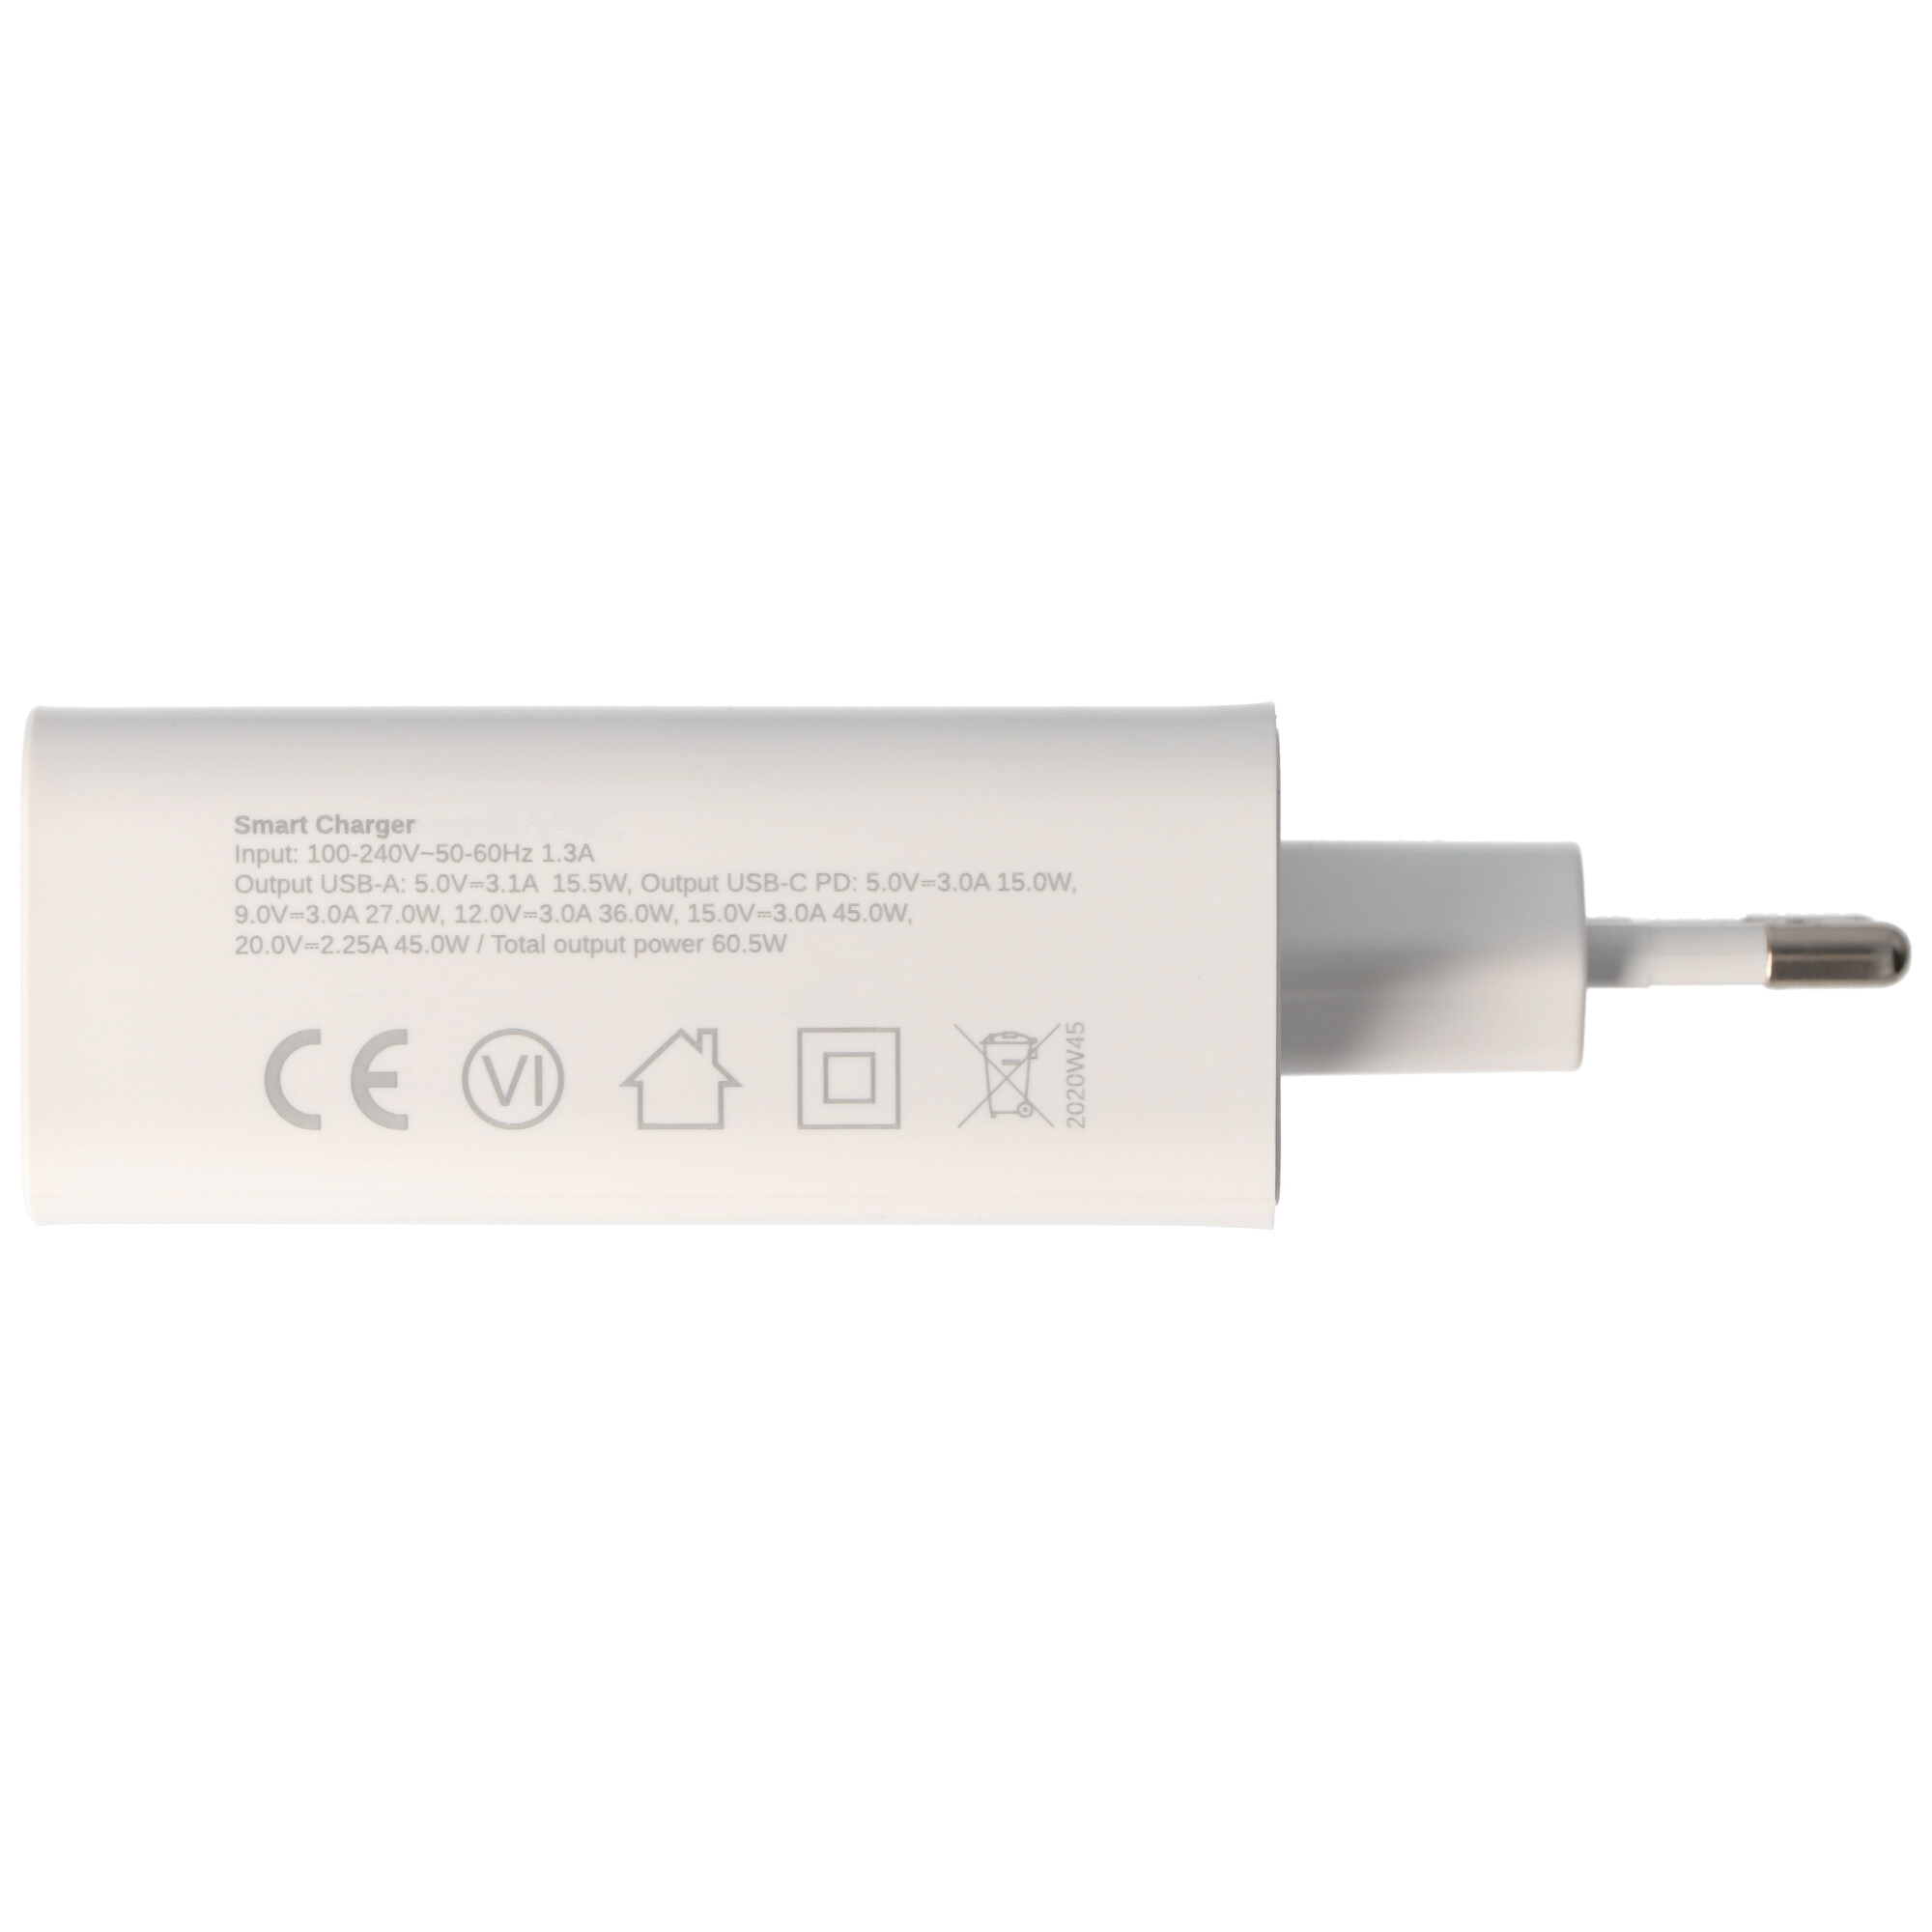 Quattro-USB Schnellladegerät USB QC3.0 60.5W weiß, lädt bis zu 4x schneller als Standard USB-Ladegeräte